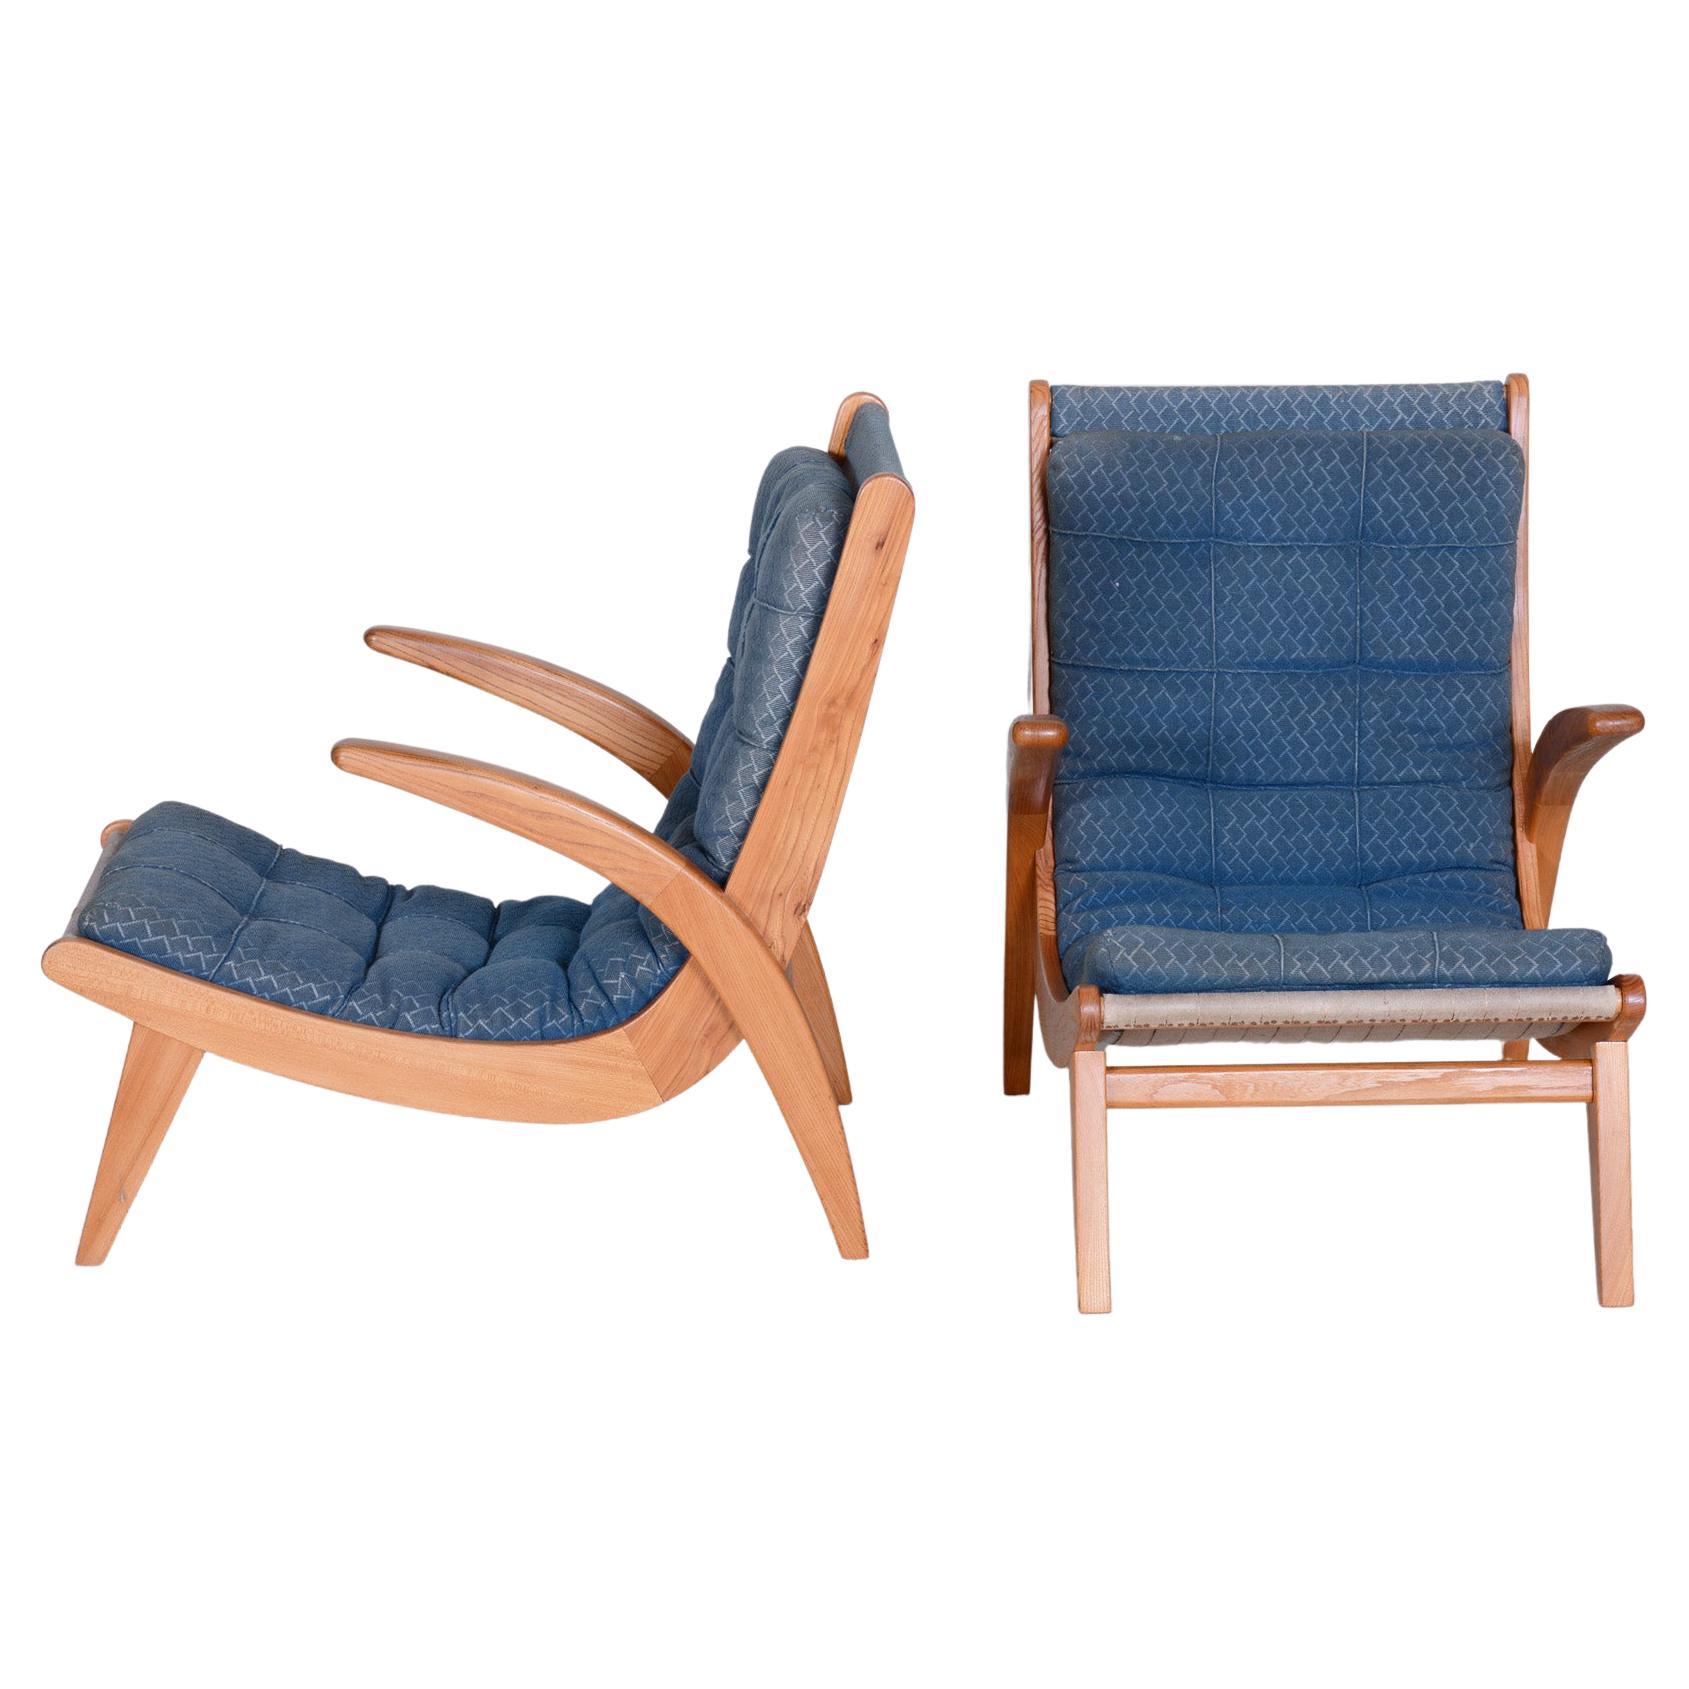 Paire de fauteuils bleus du milieu du siècle, The am designs by Jan Vaněk in the 1950s, Ash